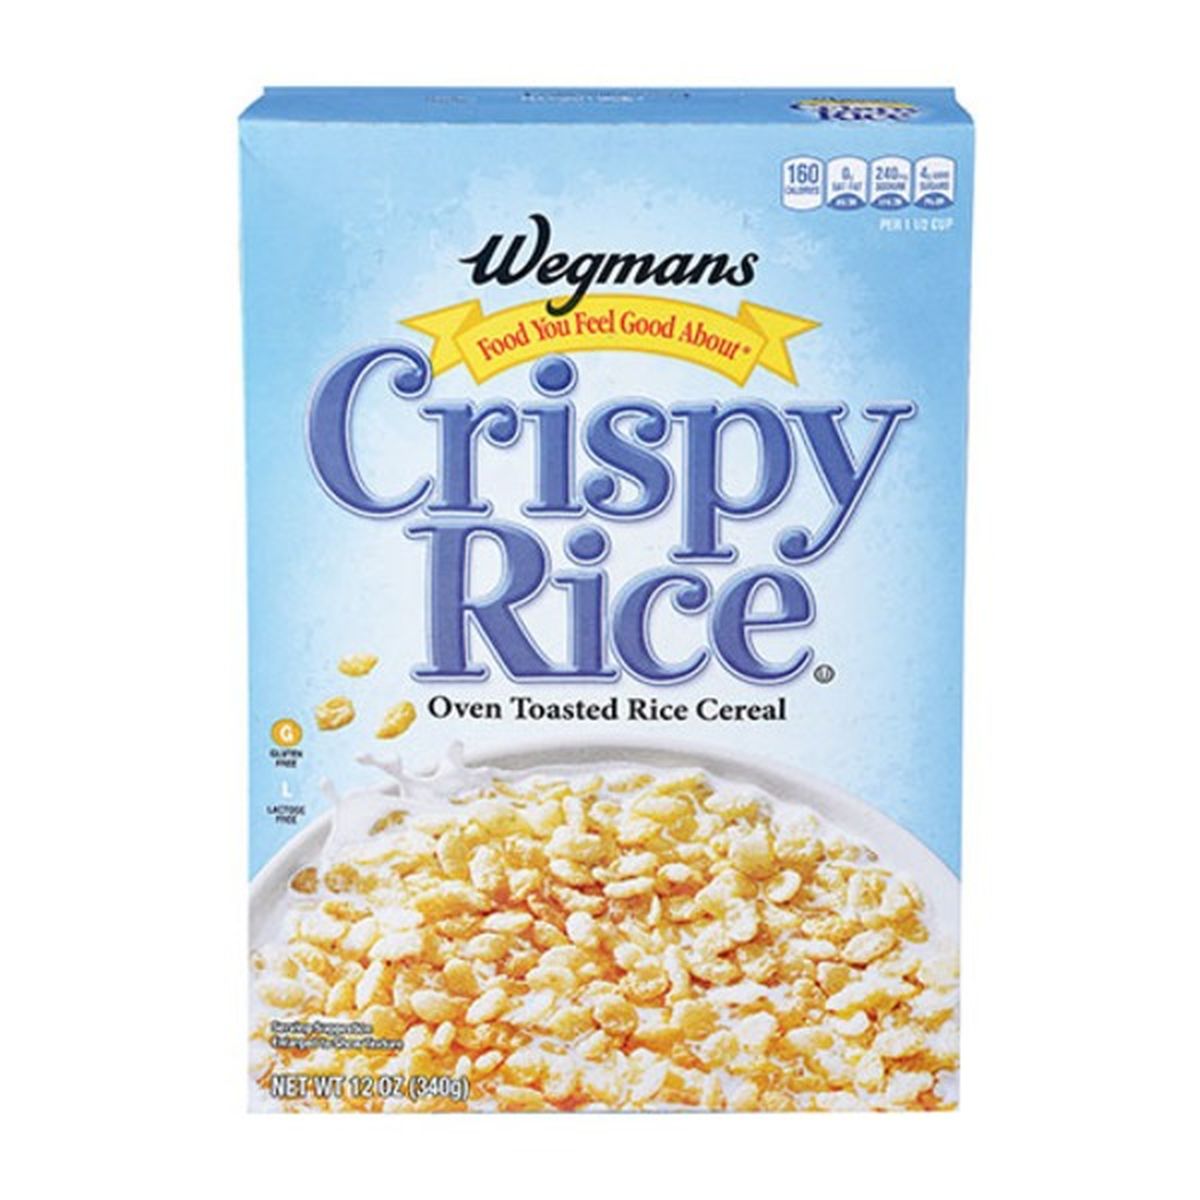 Calories in Wegmans Crispy Rice Cereal